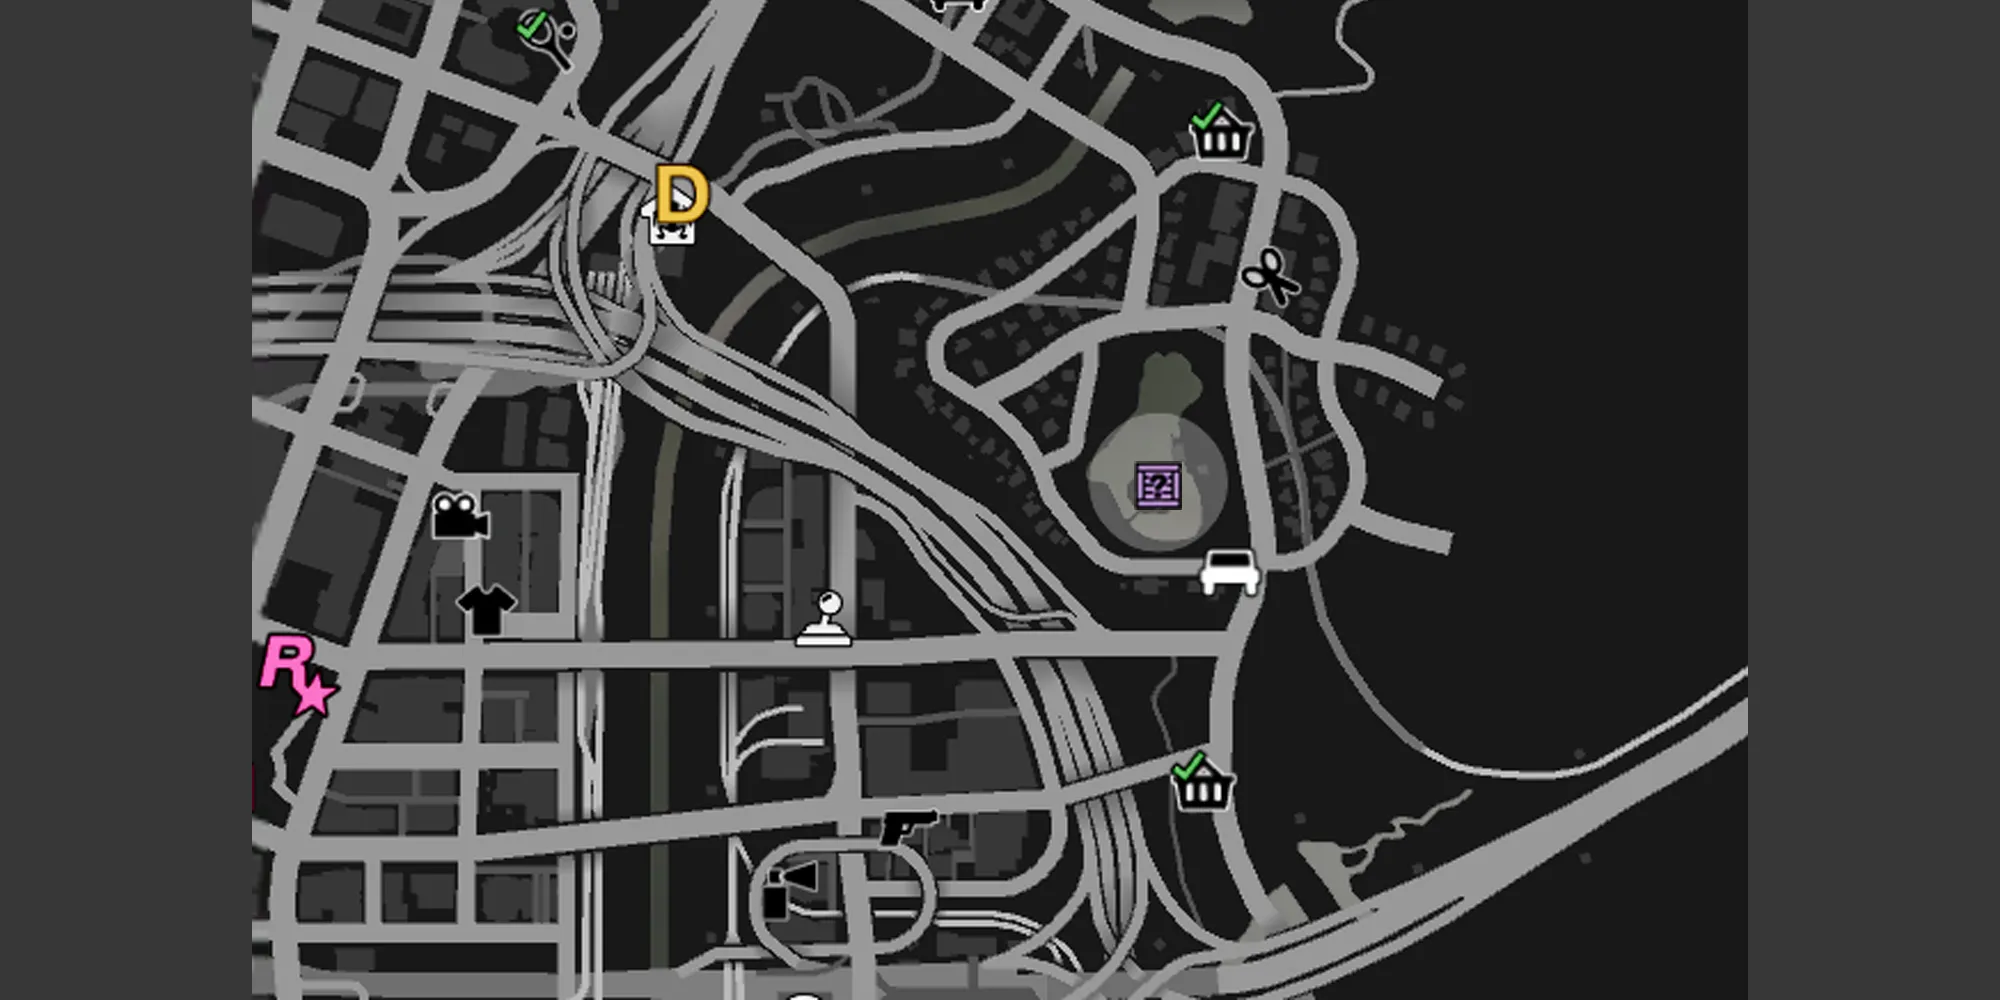 イメージはGTA Onlineのマップ上のミラーパーク湖を示しており、灰色の円と紫色のGのキャッシュの箱のアイコンがあります。